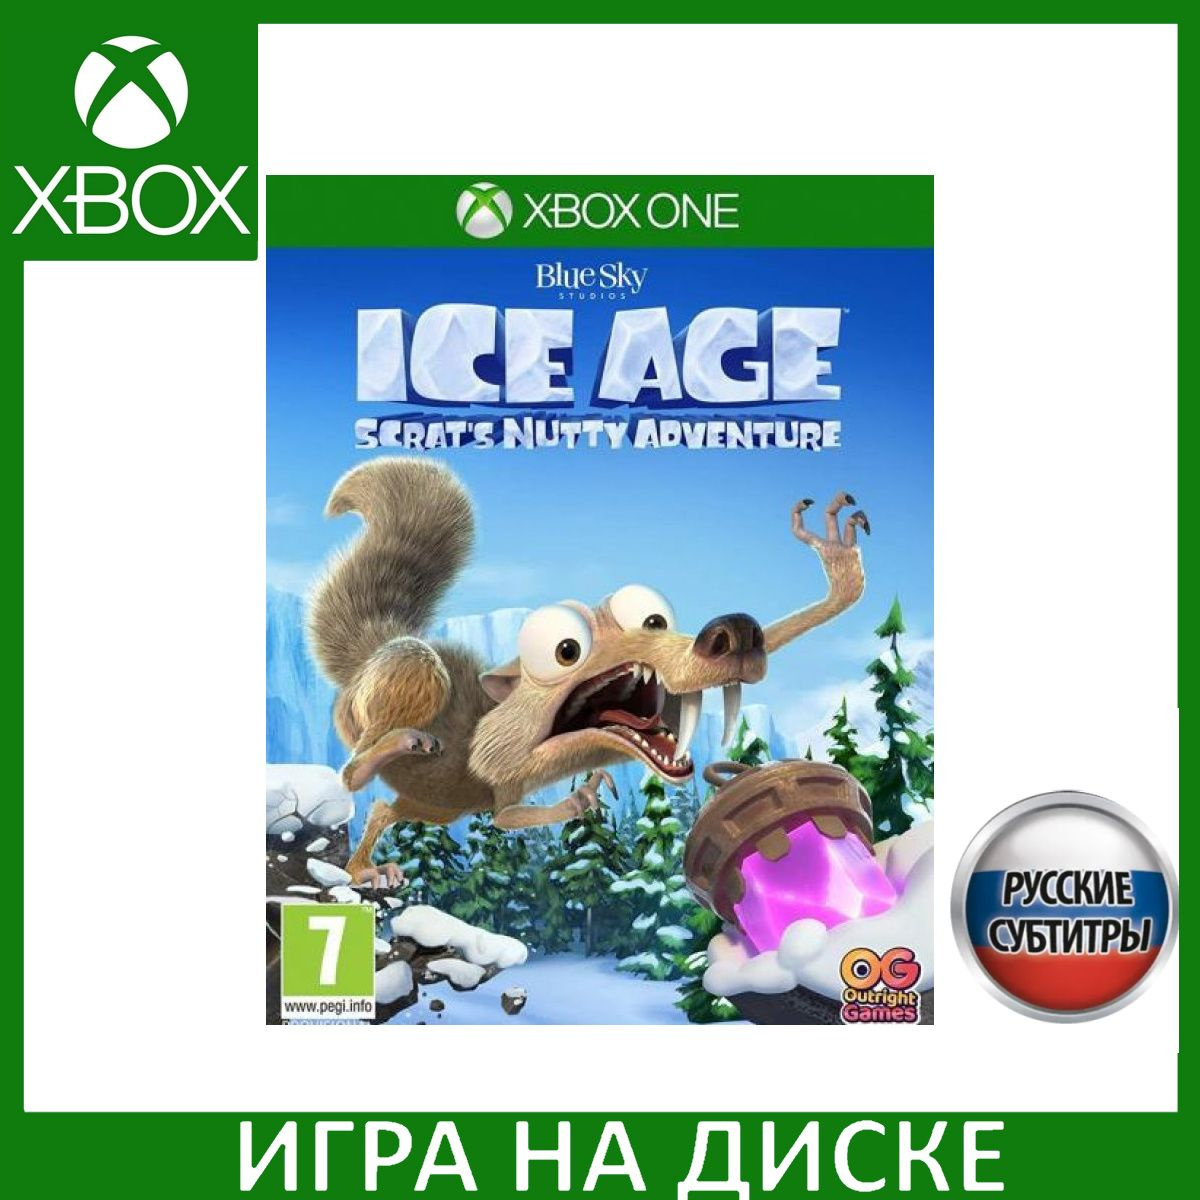 Игра на Диске Ледниковый период (Ice Age): Сумасшедшее приключение Скрэта (Scrat's Nutty Adventure) Русская версия (Xbox One/Series X)